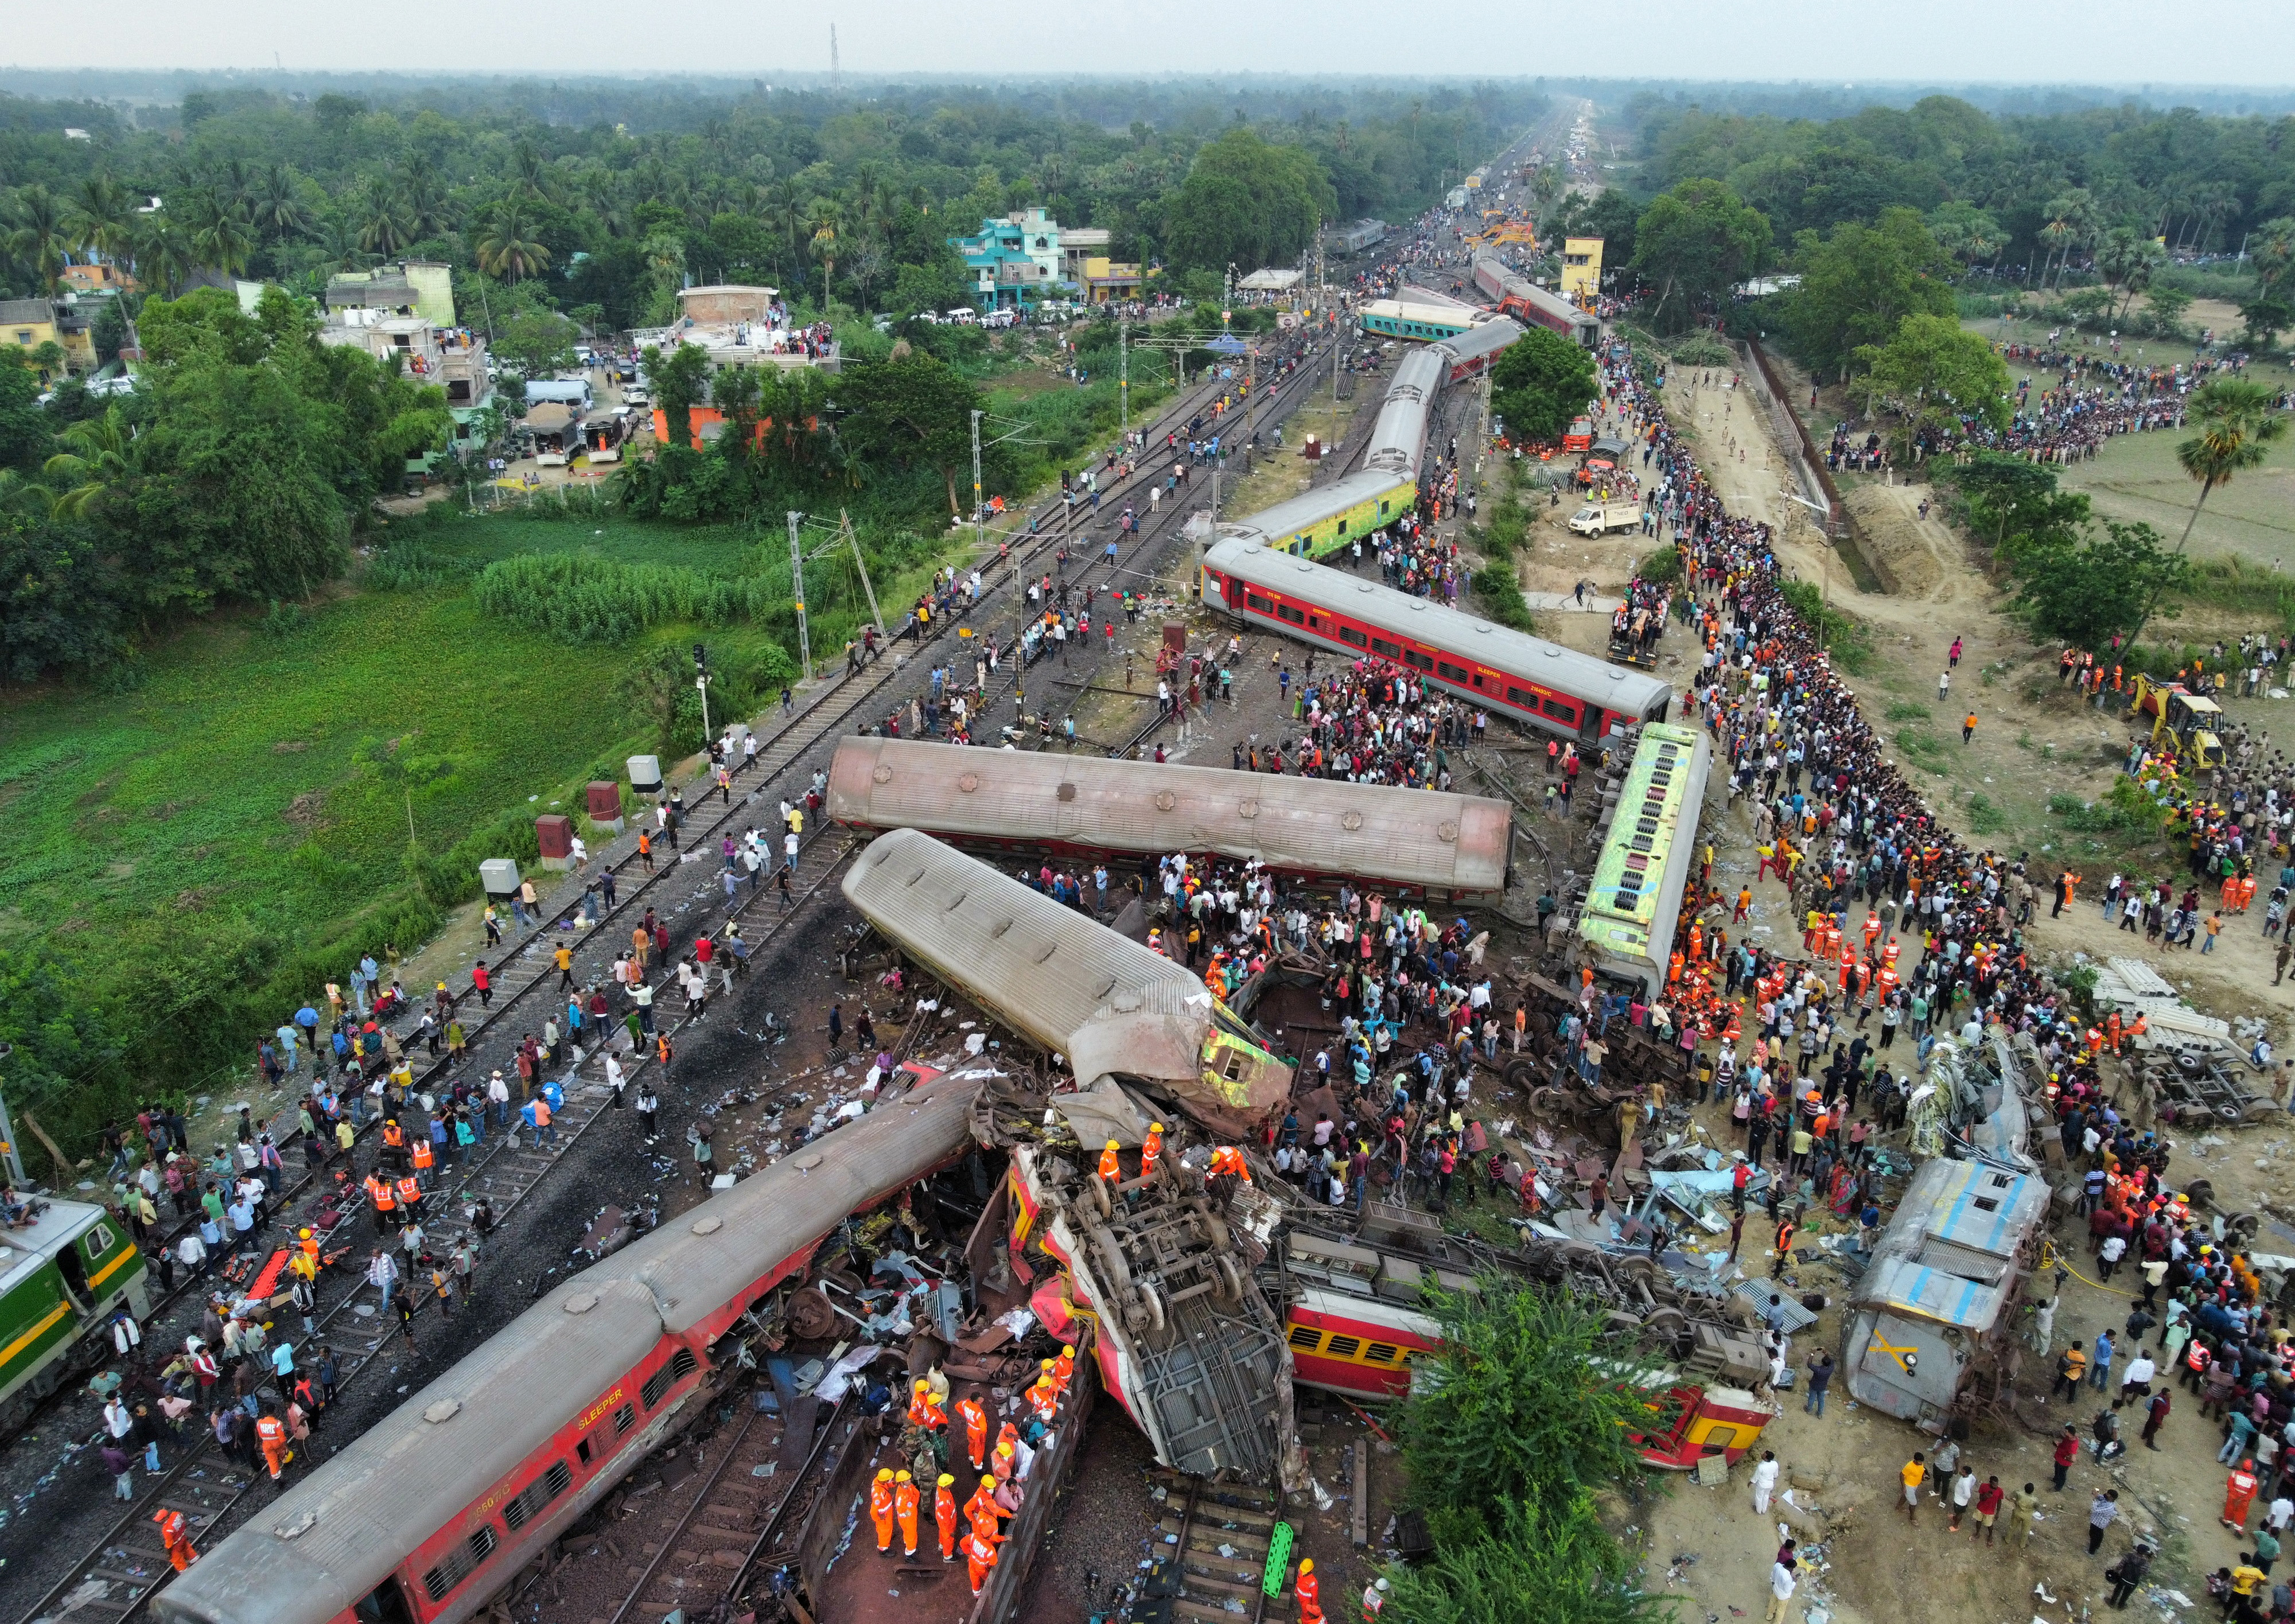 Tragedia en la India: un fallo en el sistema de señalización causó el choque de tres trenes que dejó casi 300 muertos